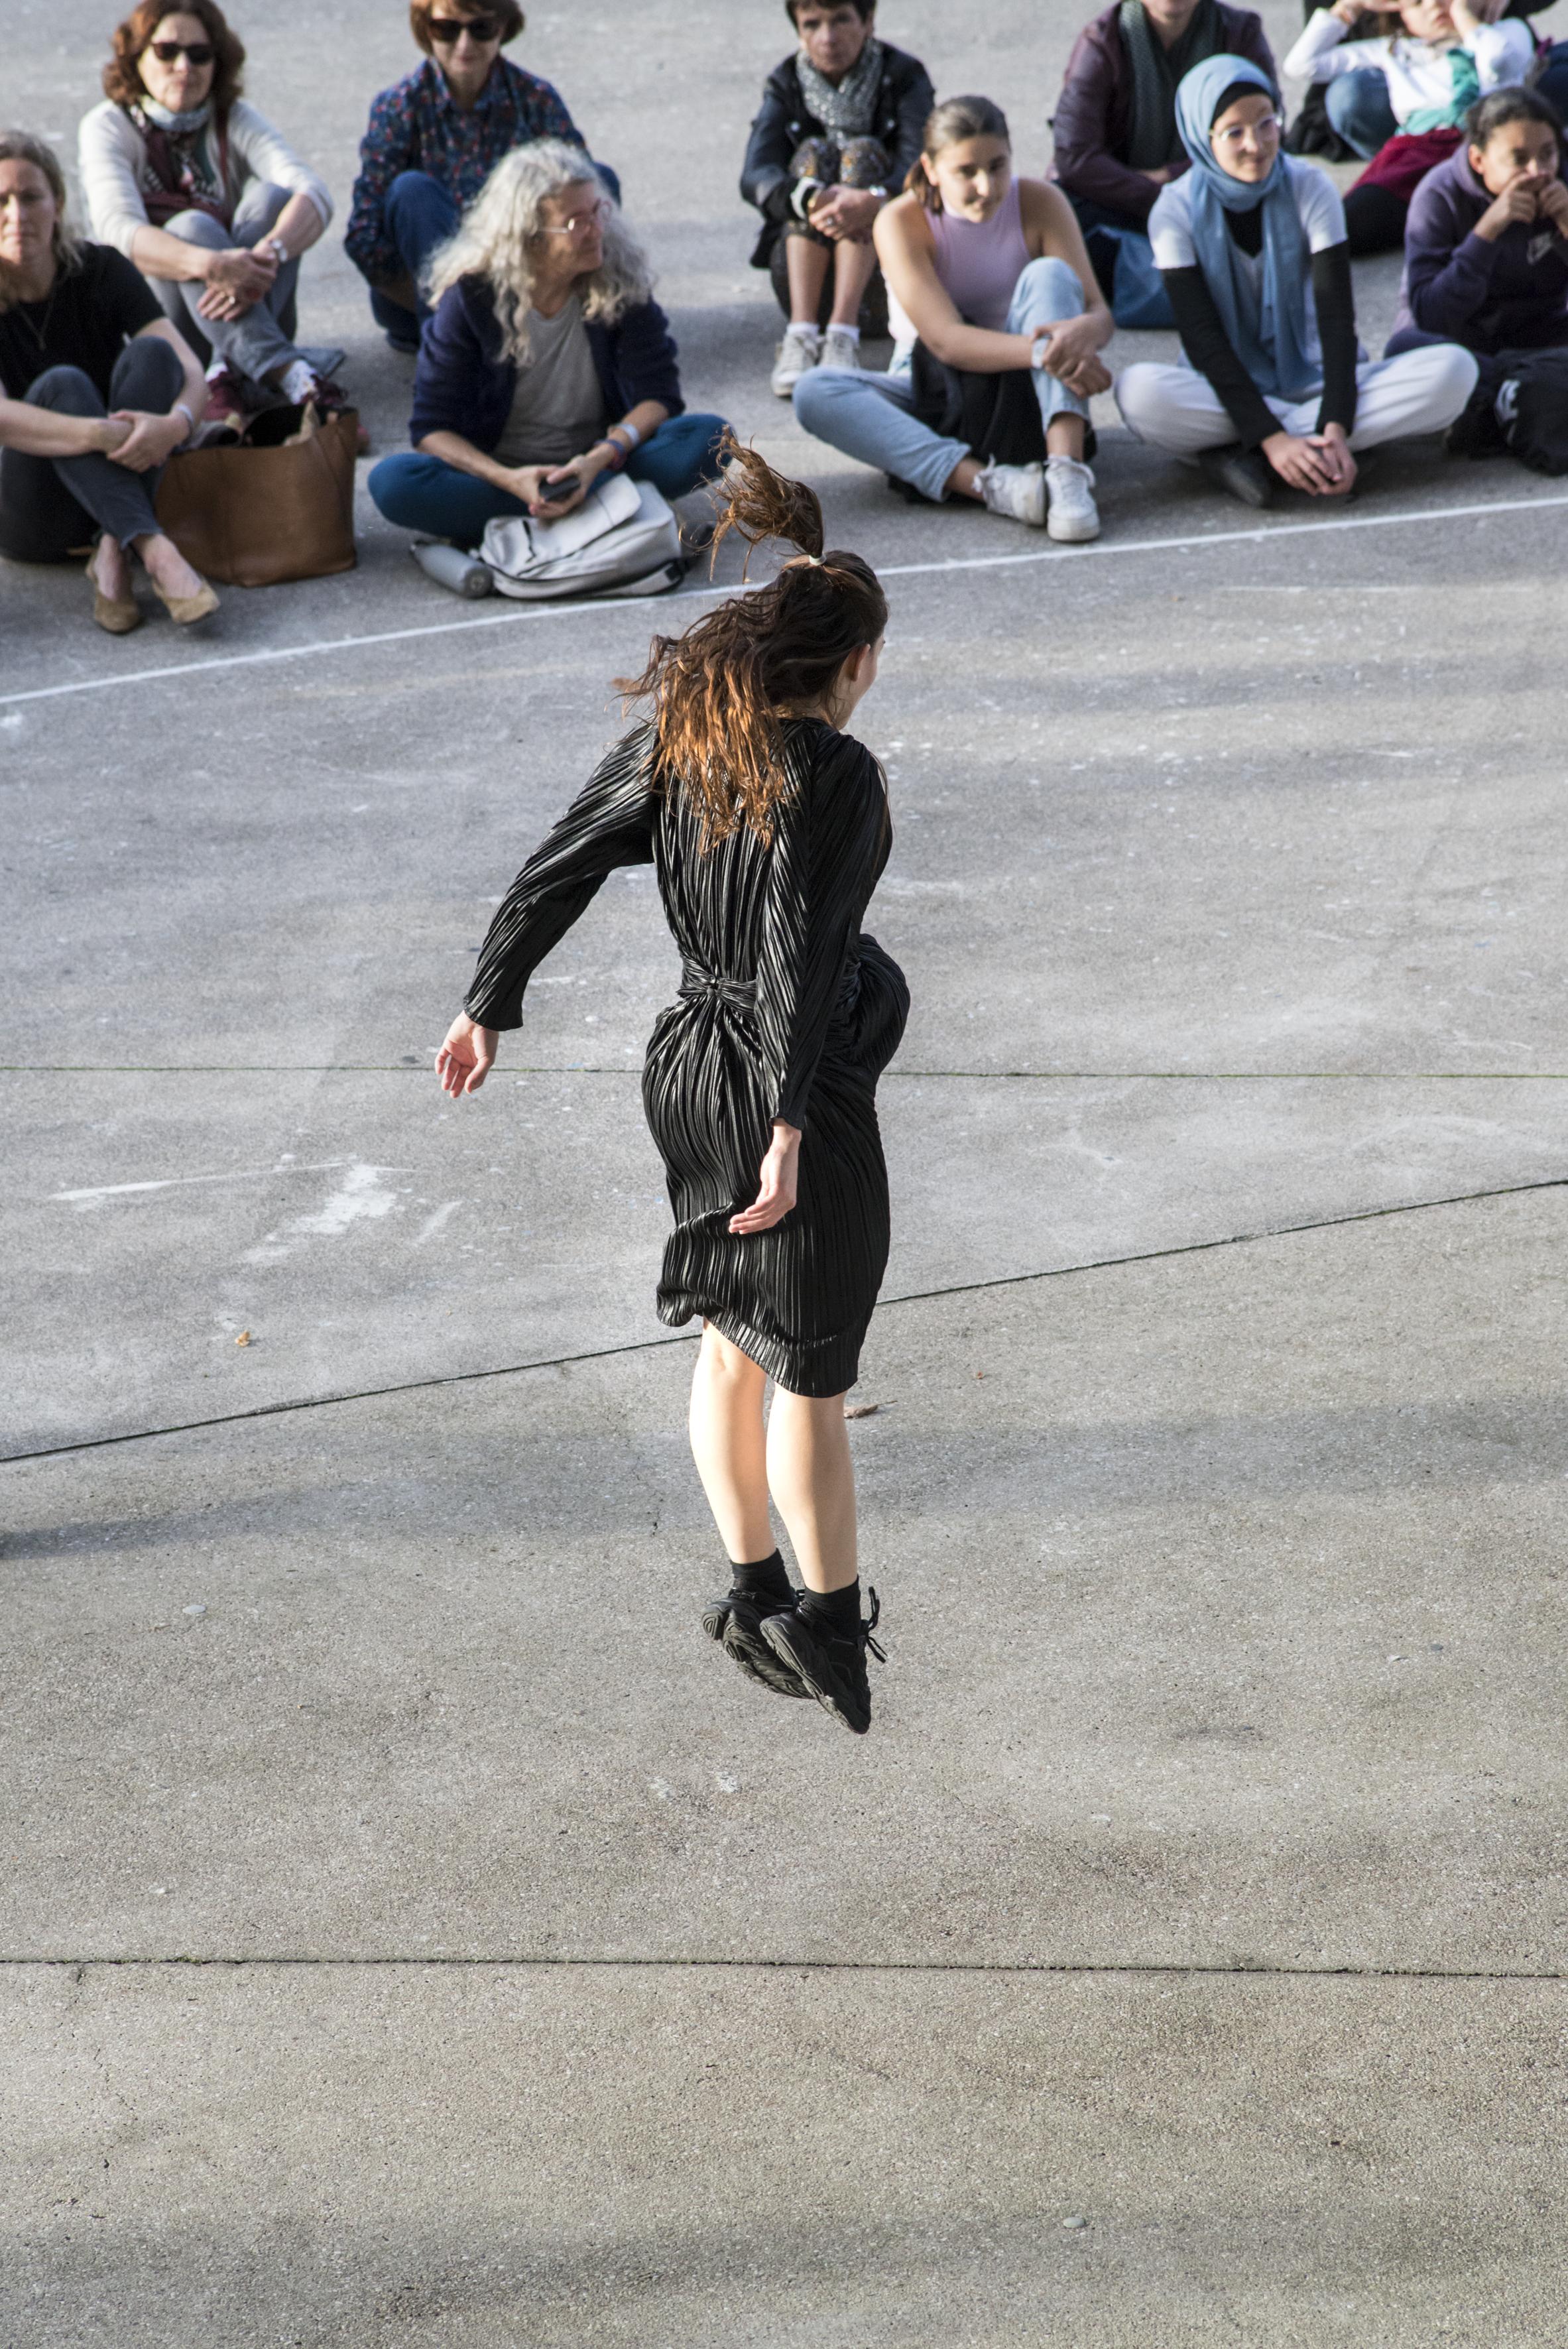 身穿黑色連身裙的舞者在龐畢度中心梅斯分館的廣場上跳躍，面對盤腿而坐的公眾